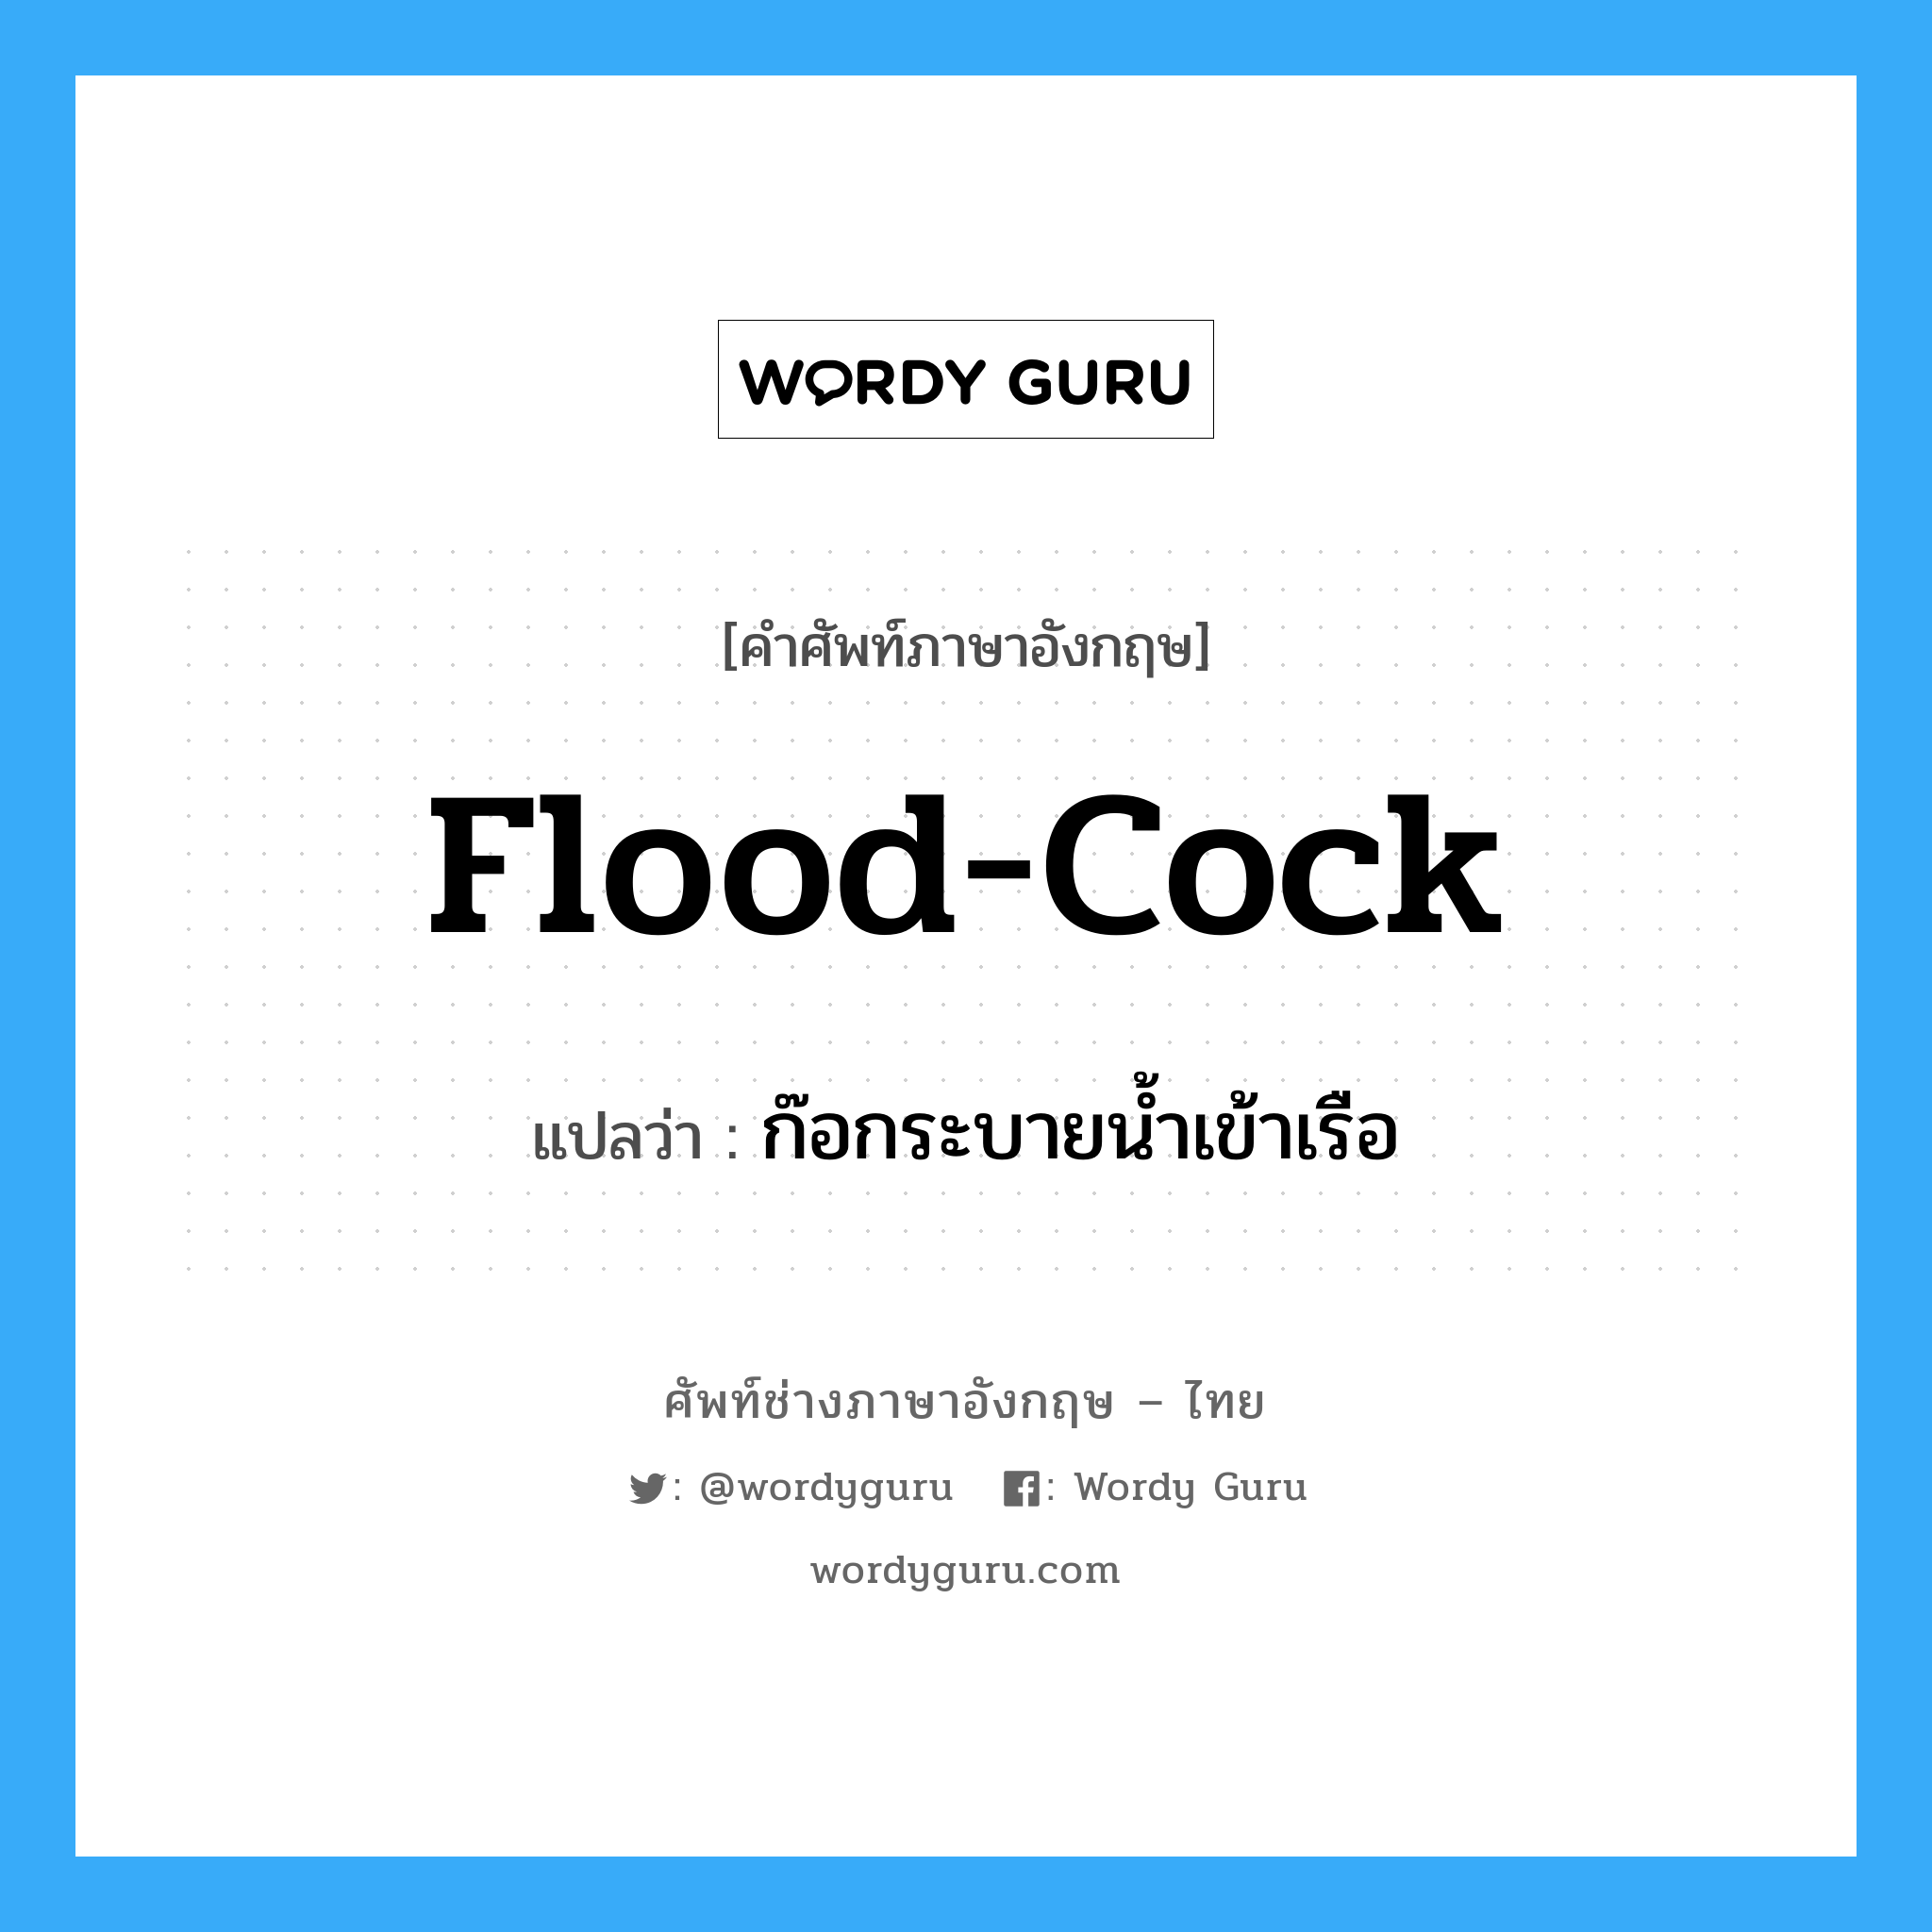 flood-cock แปลว่า?, คำศัพท์ช่างภาษาอังกฤษ - ไทย flood-cock คำศัพท์ภาษาอังกฤษ flood-cock แปลว่า ก๊อกระบายน้ำเข้าเรือ